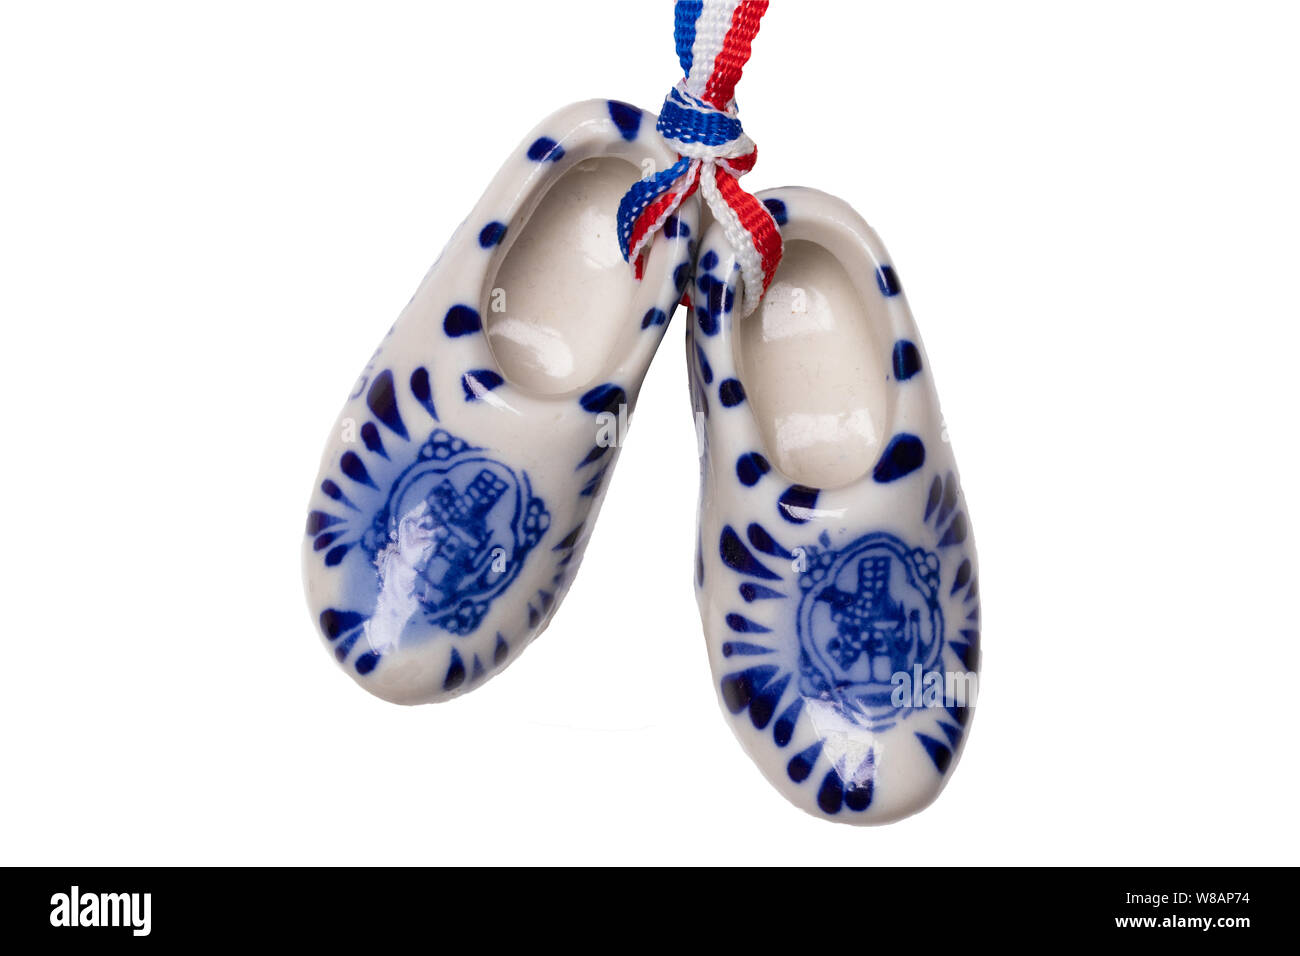 Sabots en bois de New Holland. Une paire de chaussures en porcelaine traditionnelle hollandaise avec un drapeau du ruban isolé sur un fond blanc. Souvenir d'Amsterdam. Macro. Banque D'Images